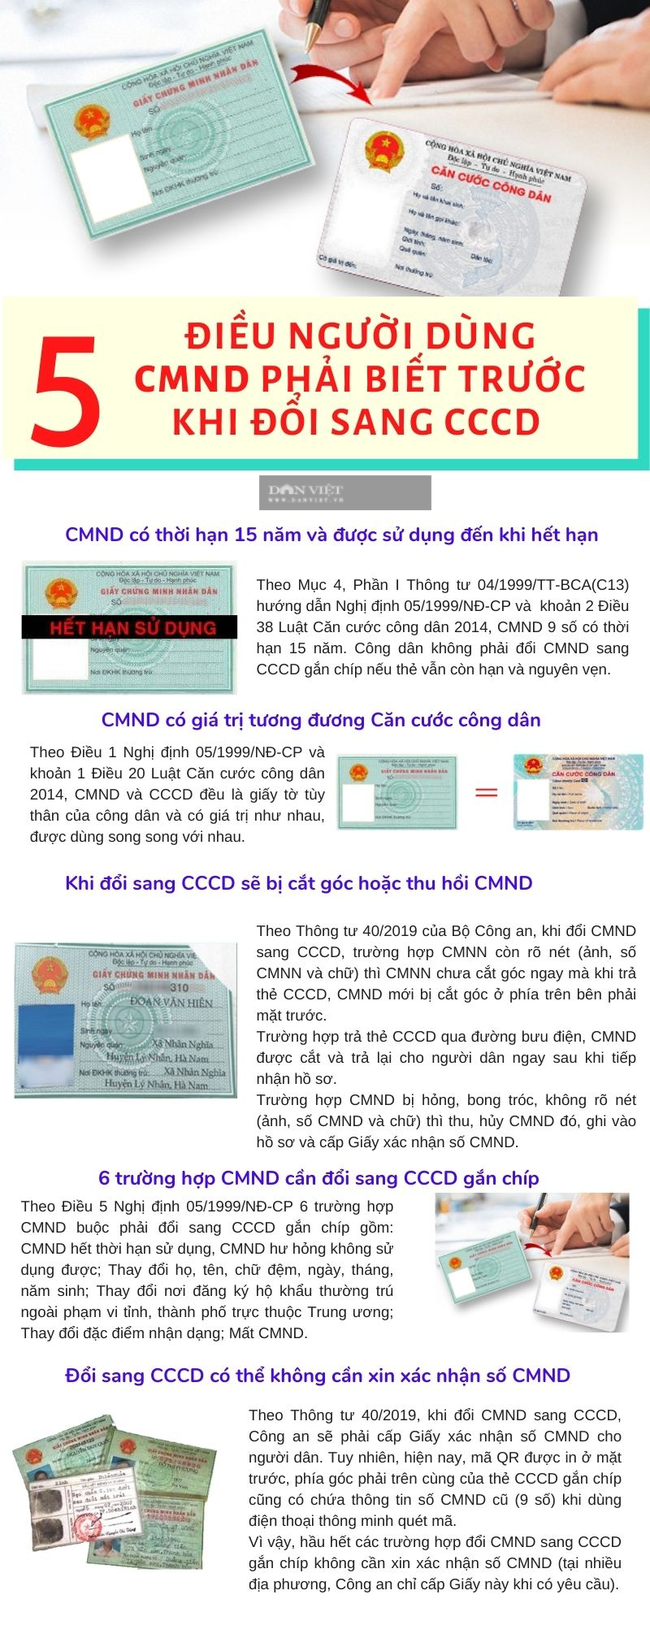 5 điều người dùng CMND cần biết trước khi làm CCCD gắn chíp - Ảnh 1.